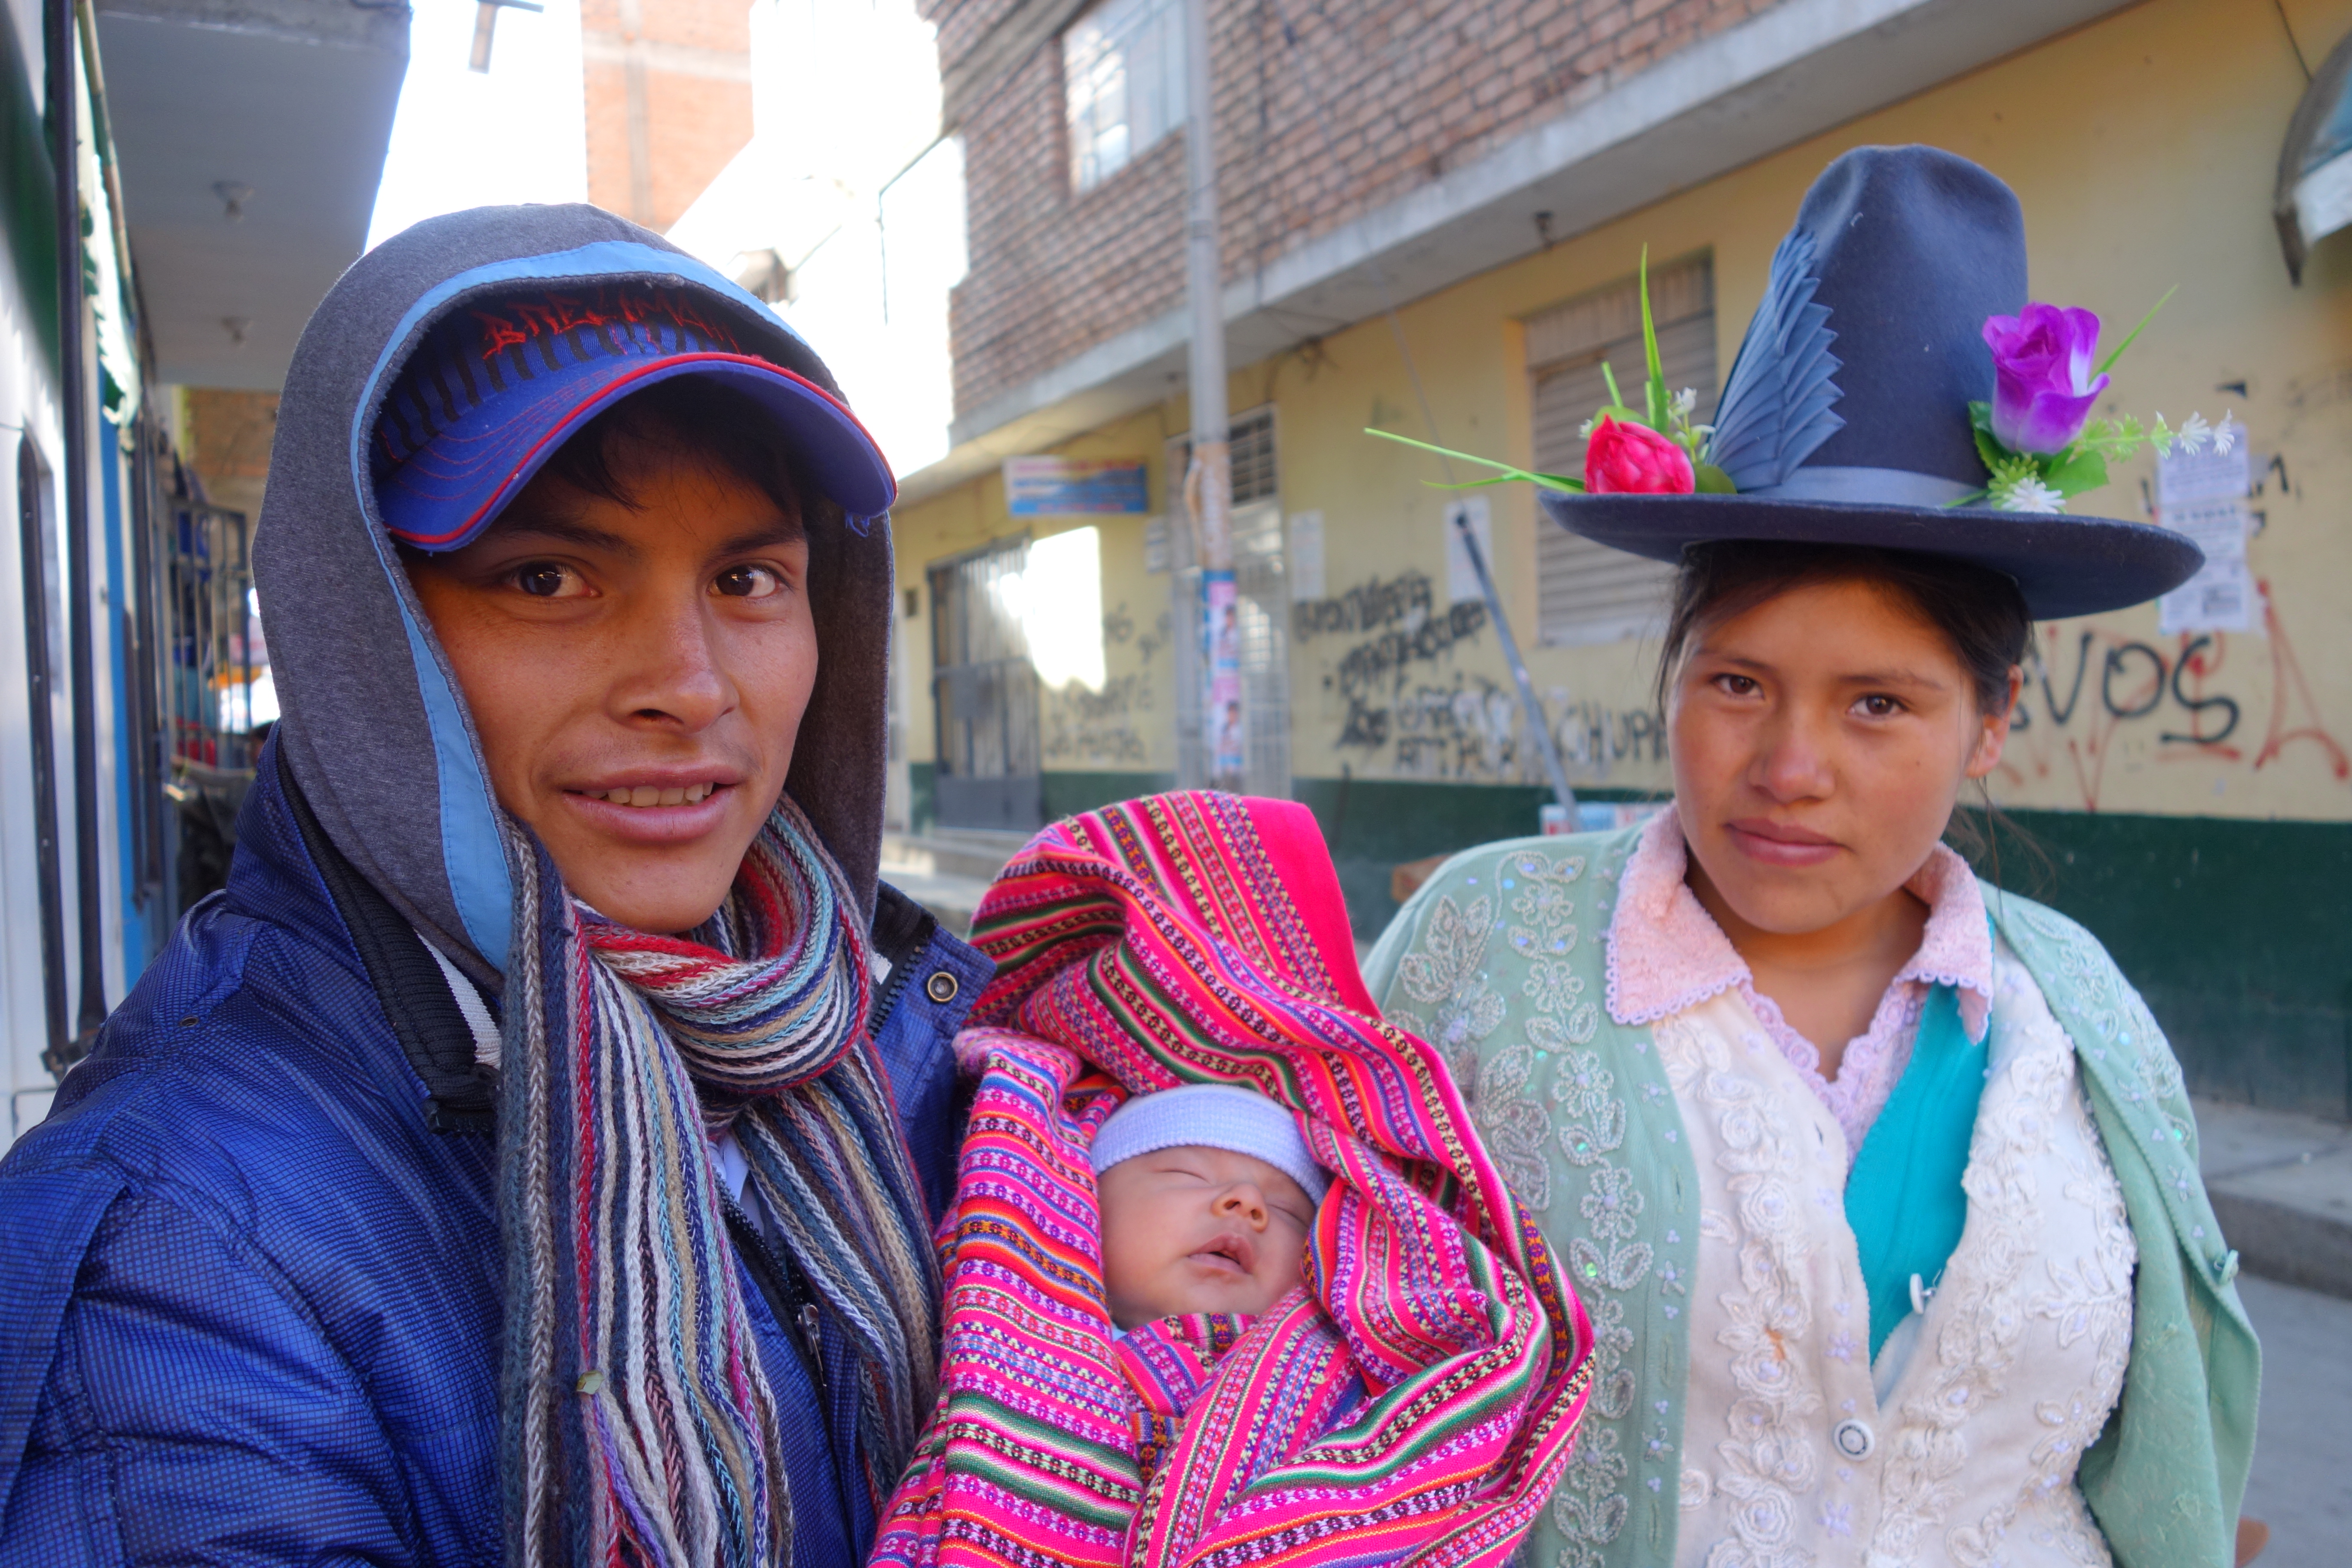 Peru-Huaraz: La famille reunie